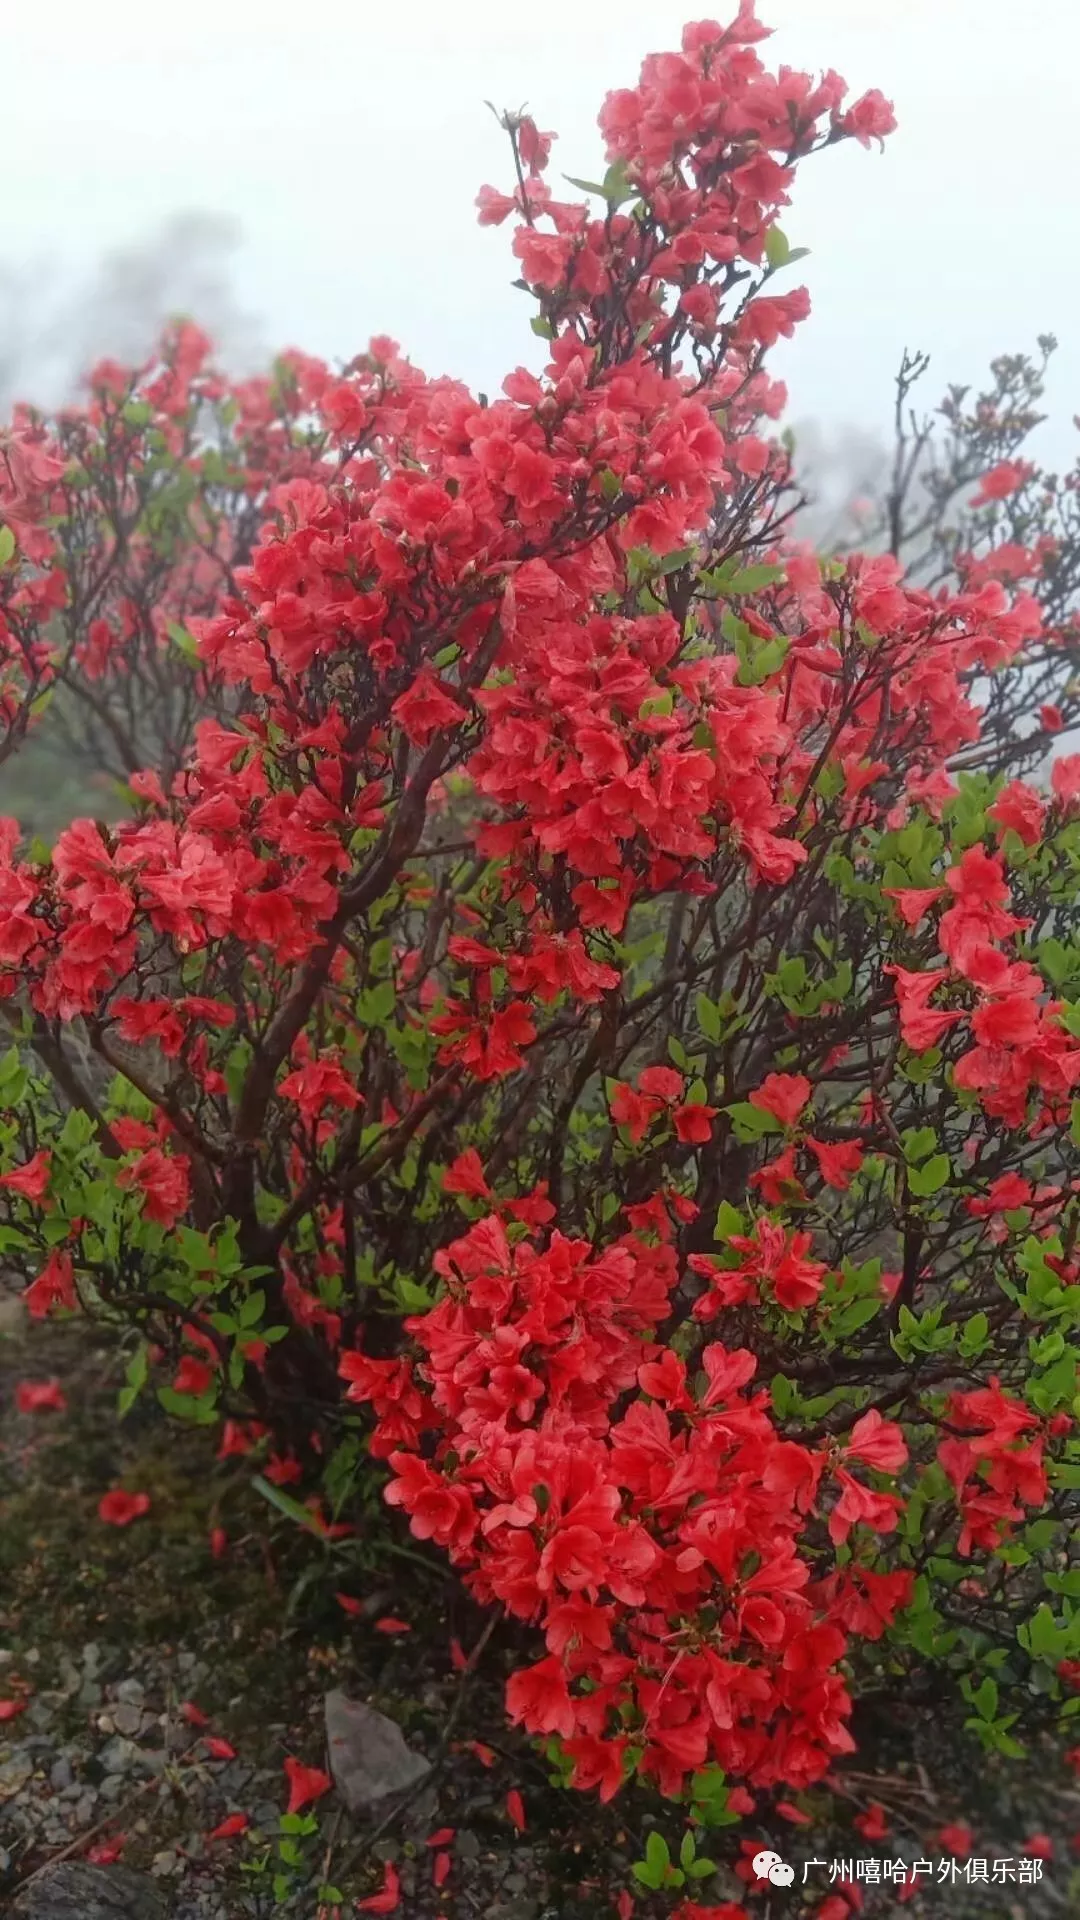 (3)4月07日 周日－千米登峰雪山嶂、赏最红艳杜娟花-户外活动图-驼铃网